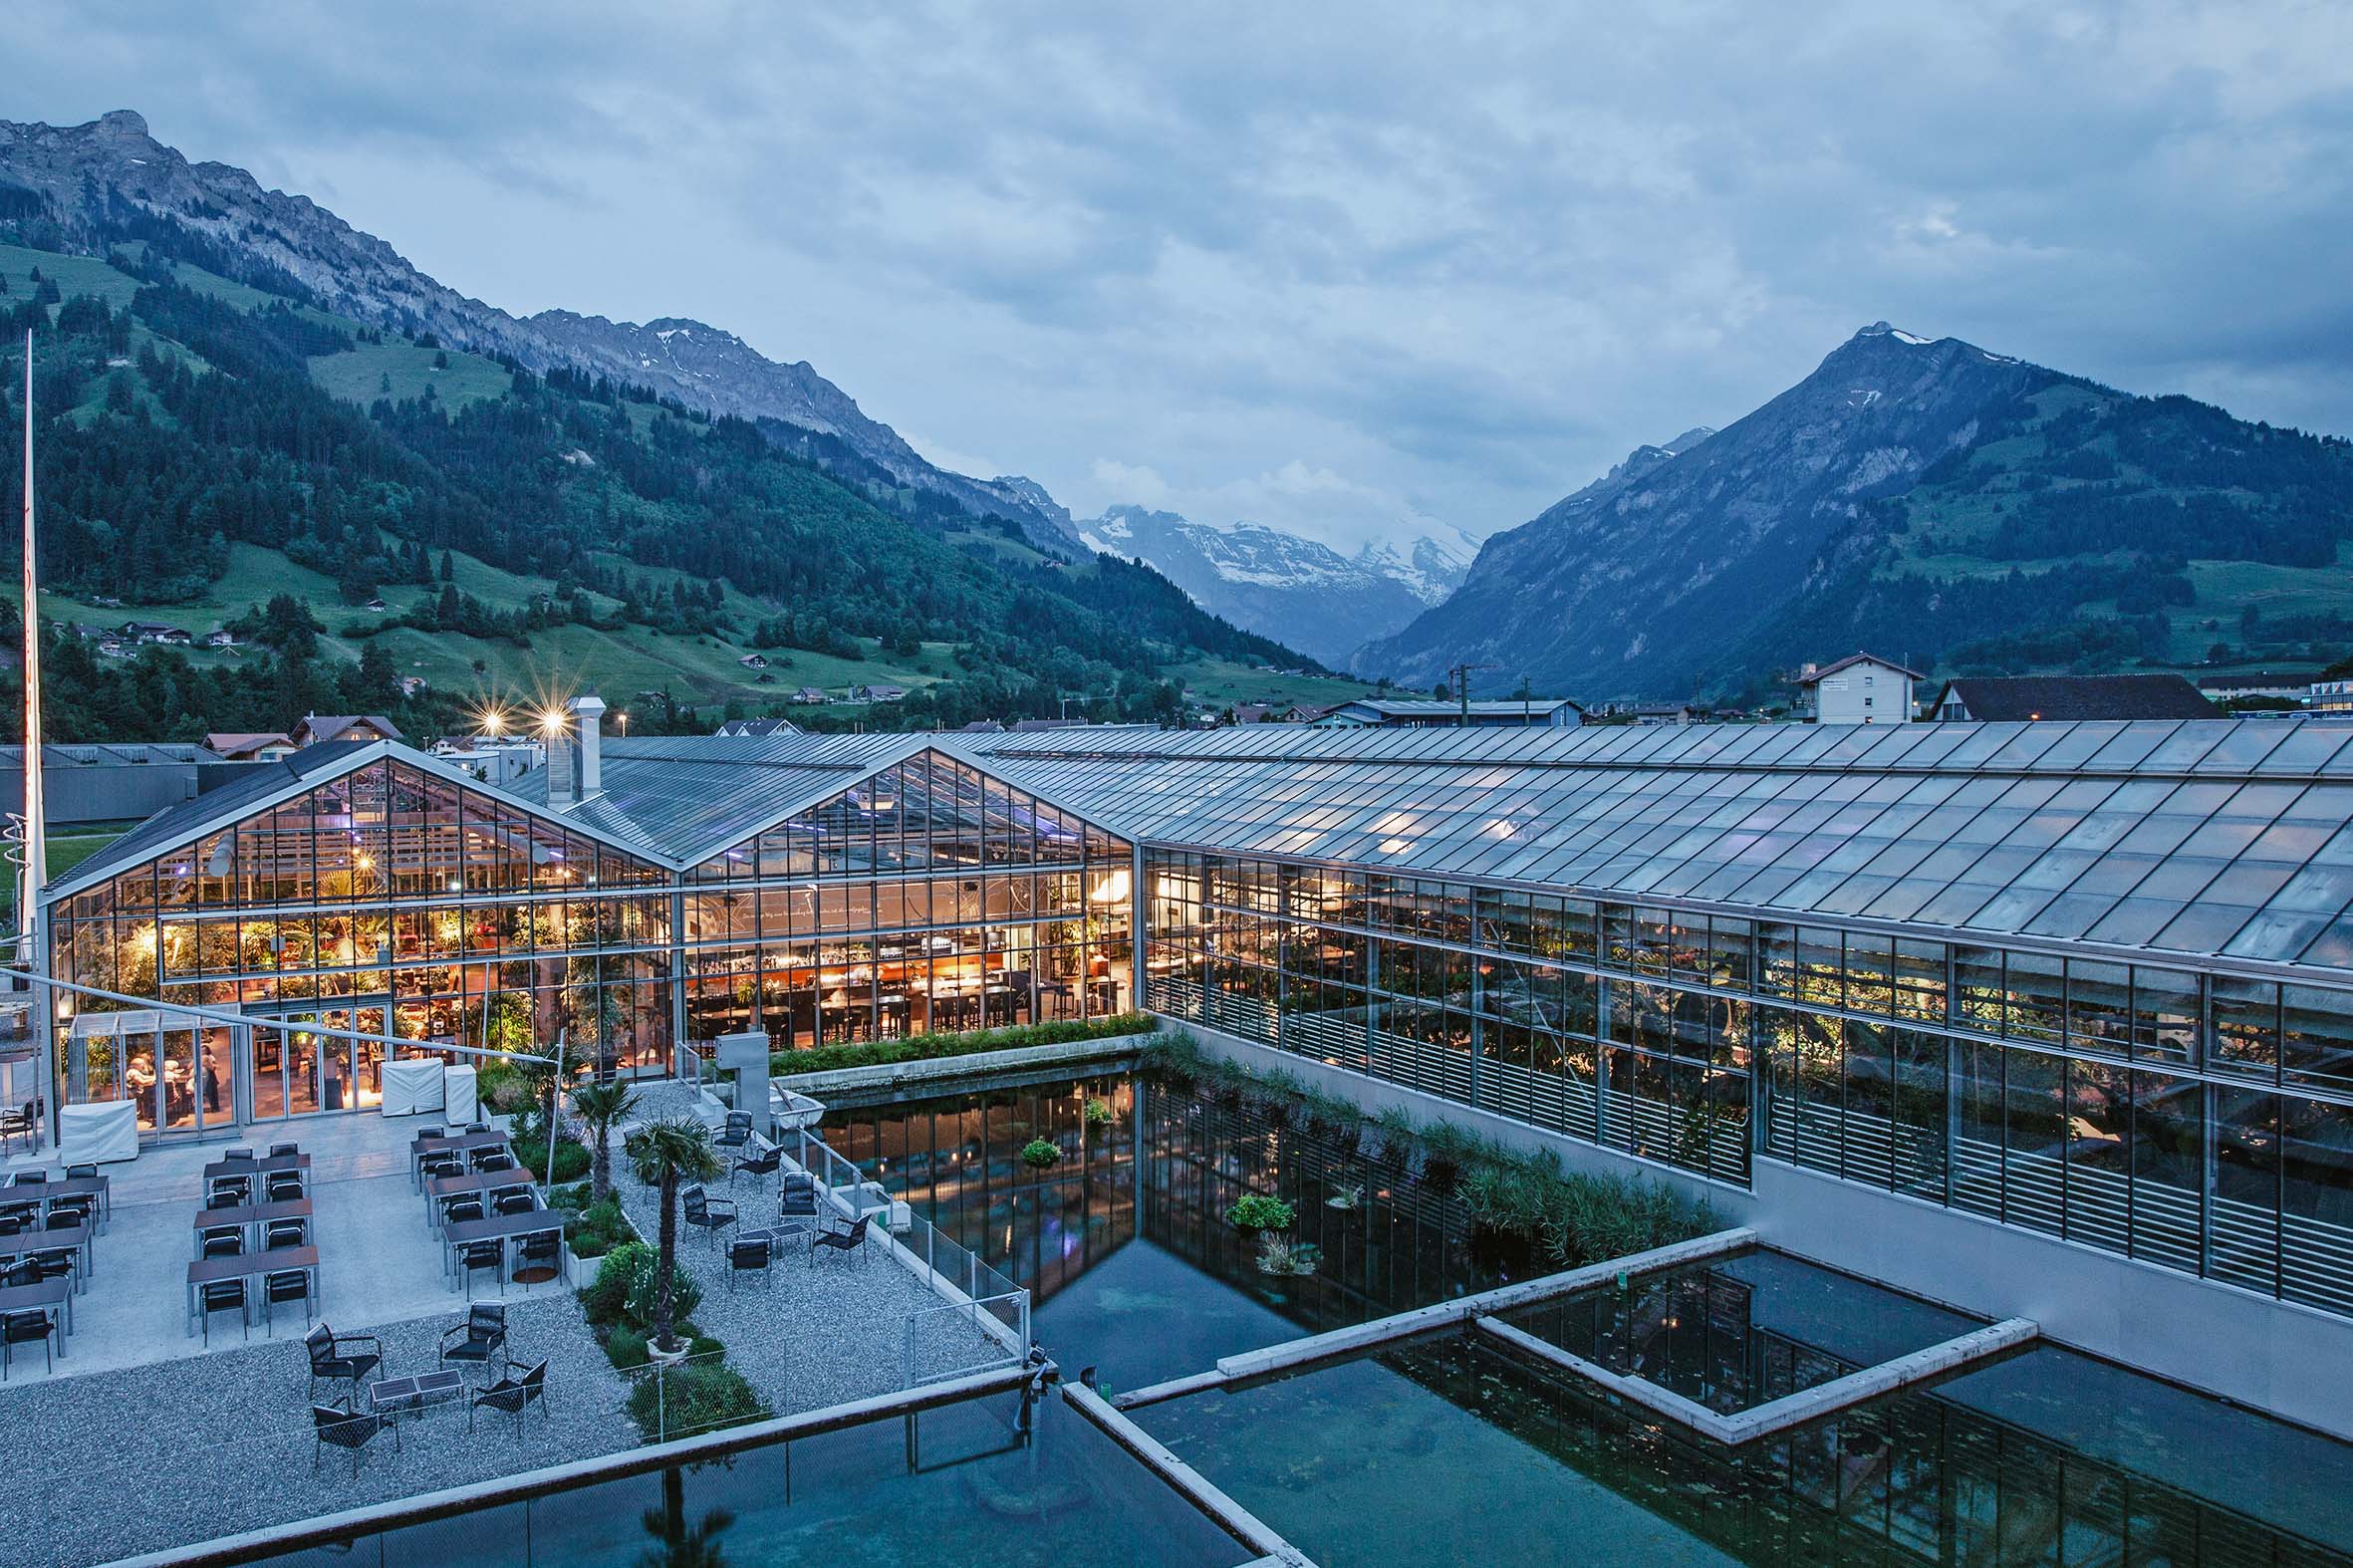 Swiss Deluxe Hotels Stories Summer 2020 Oona Caviar 03 Tropenhaus 7 Bearb Ecirgb